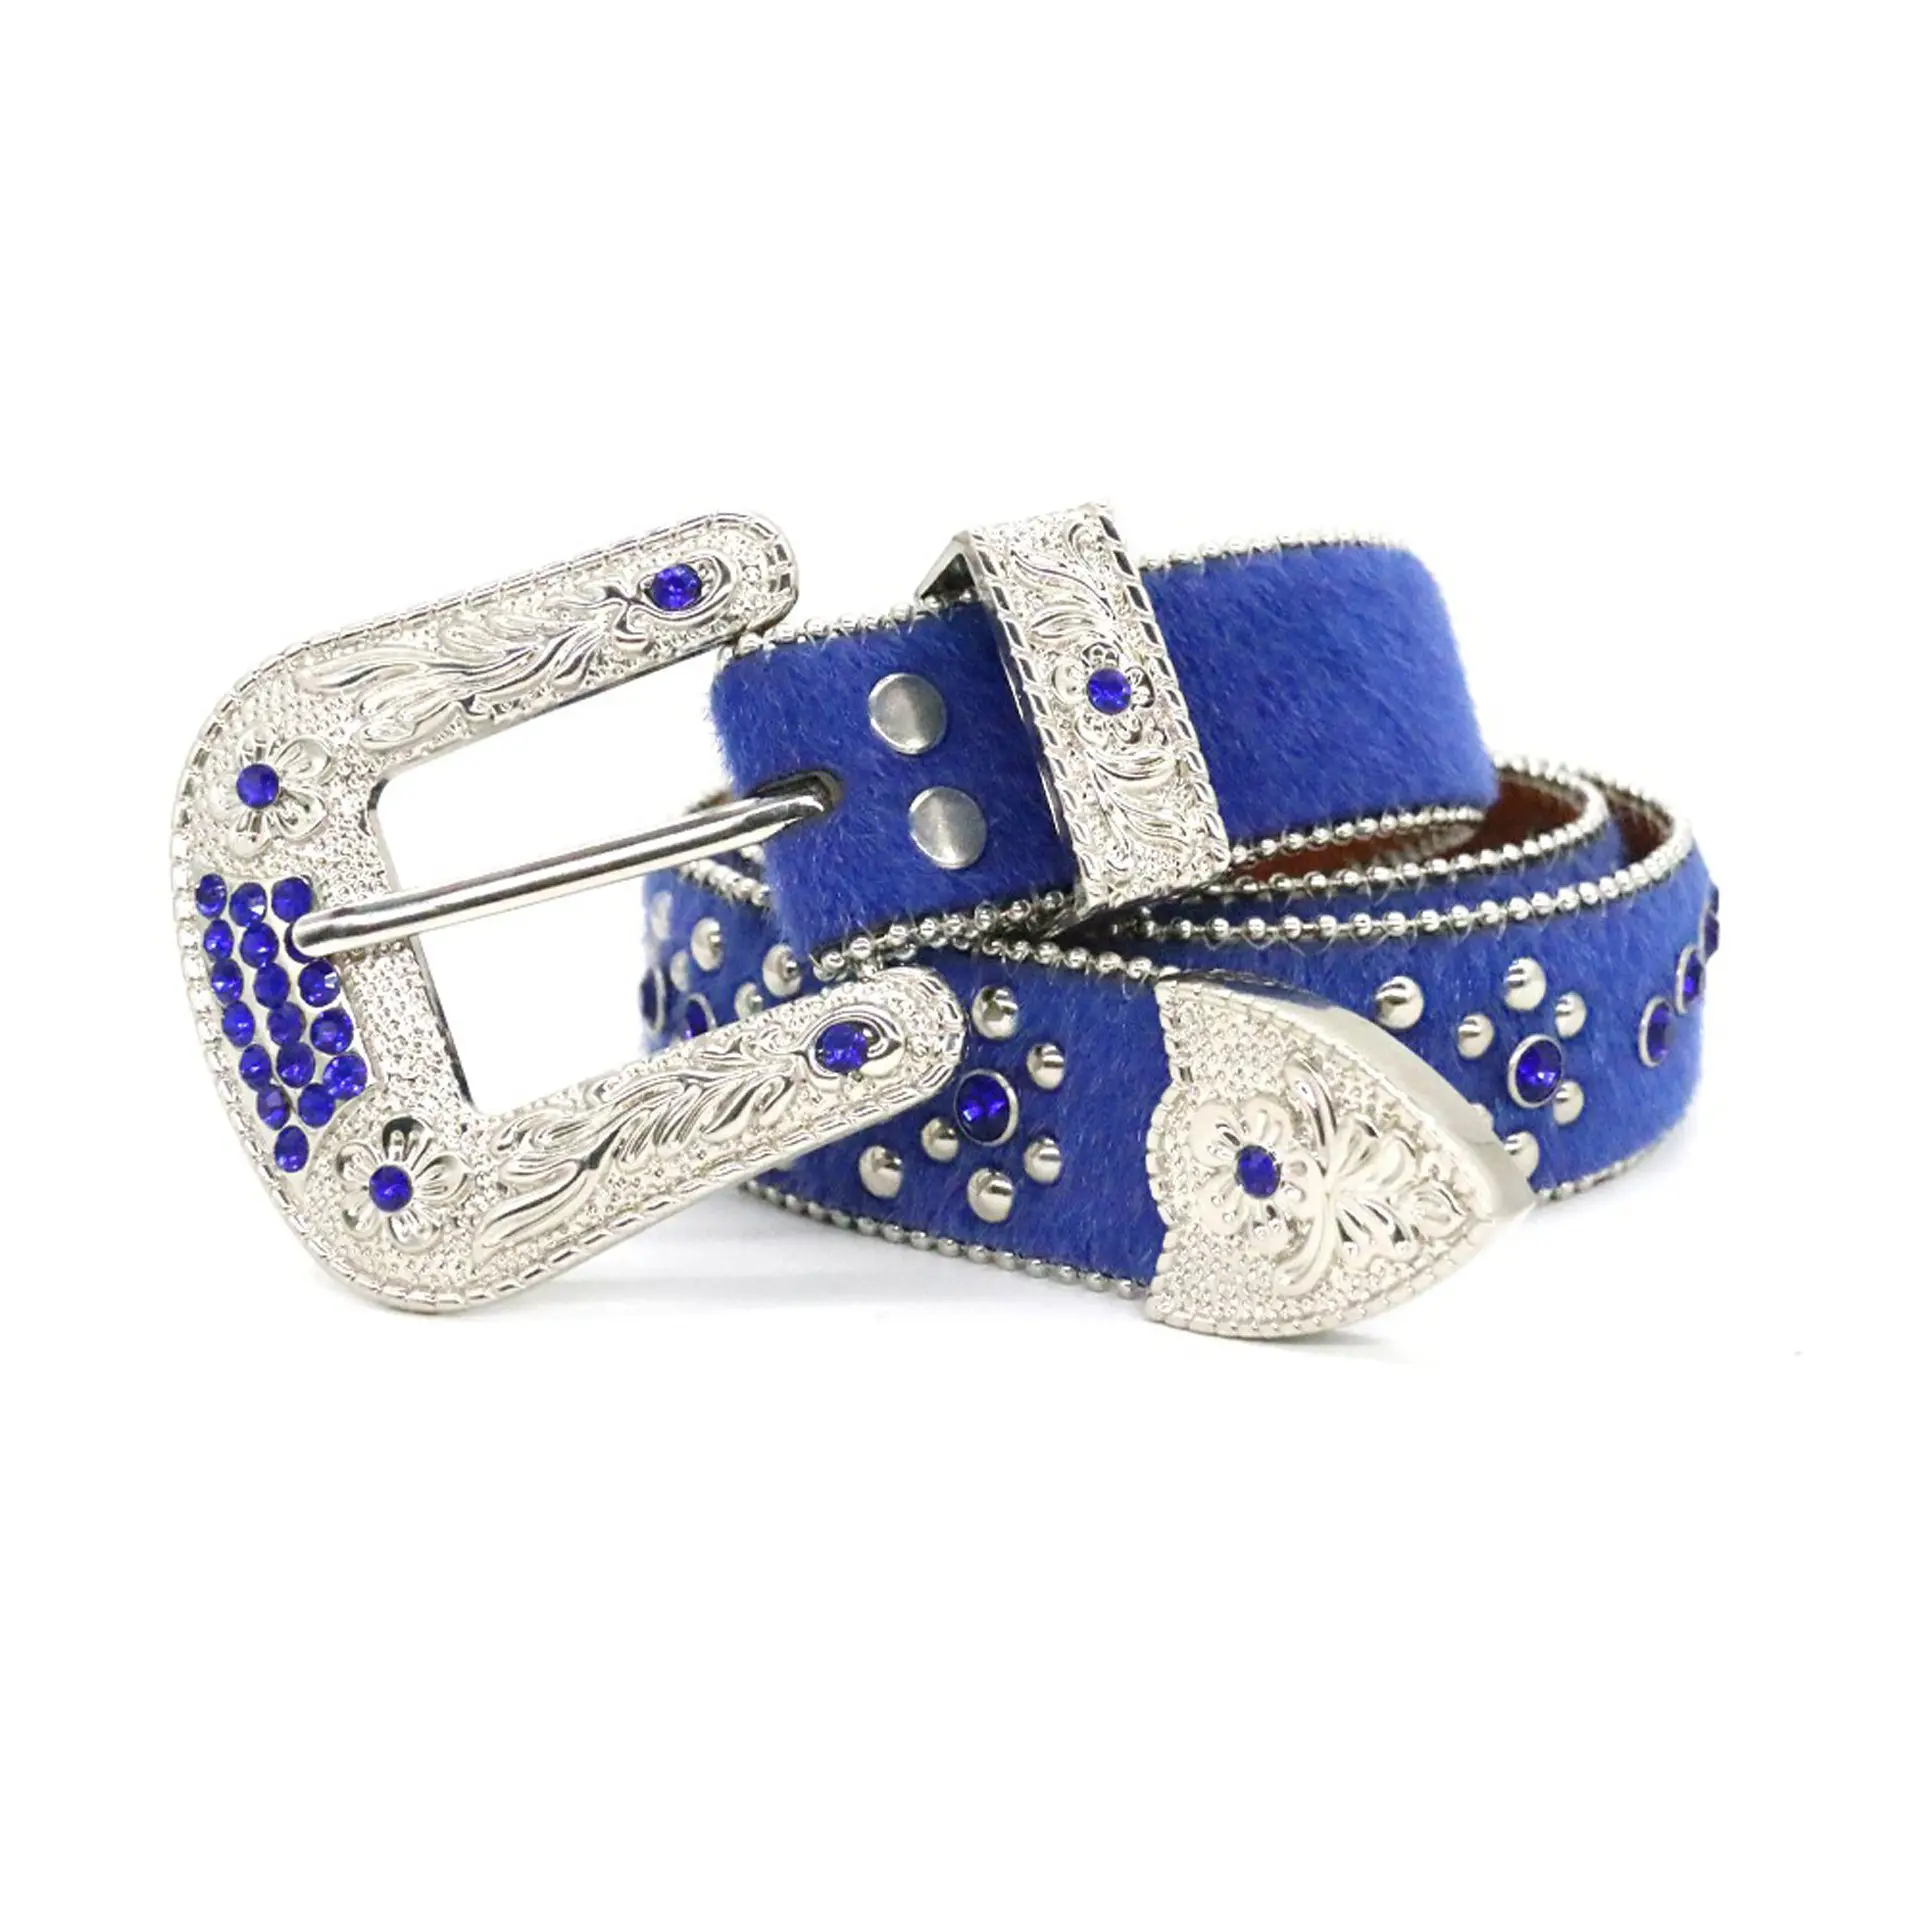 حزام الماس الملكي الأزرق الشعر الحصان مع الفضة الأزهار محفورة مشبك الكلاسيكية